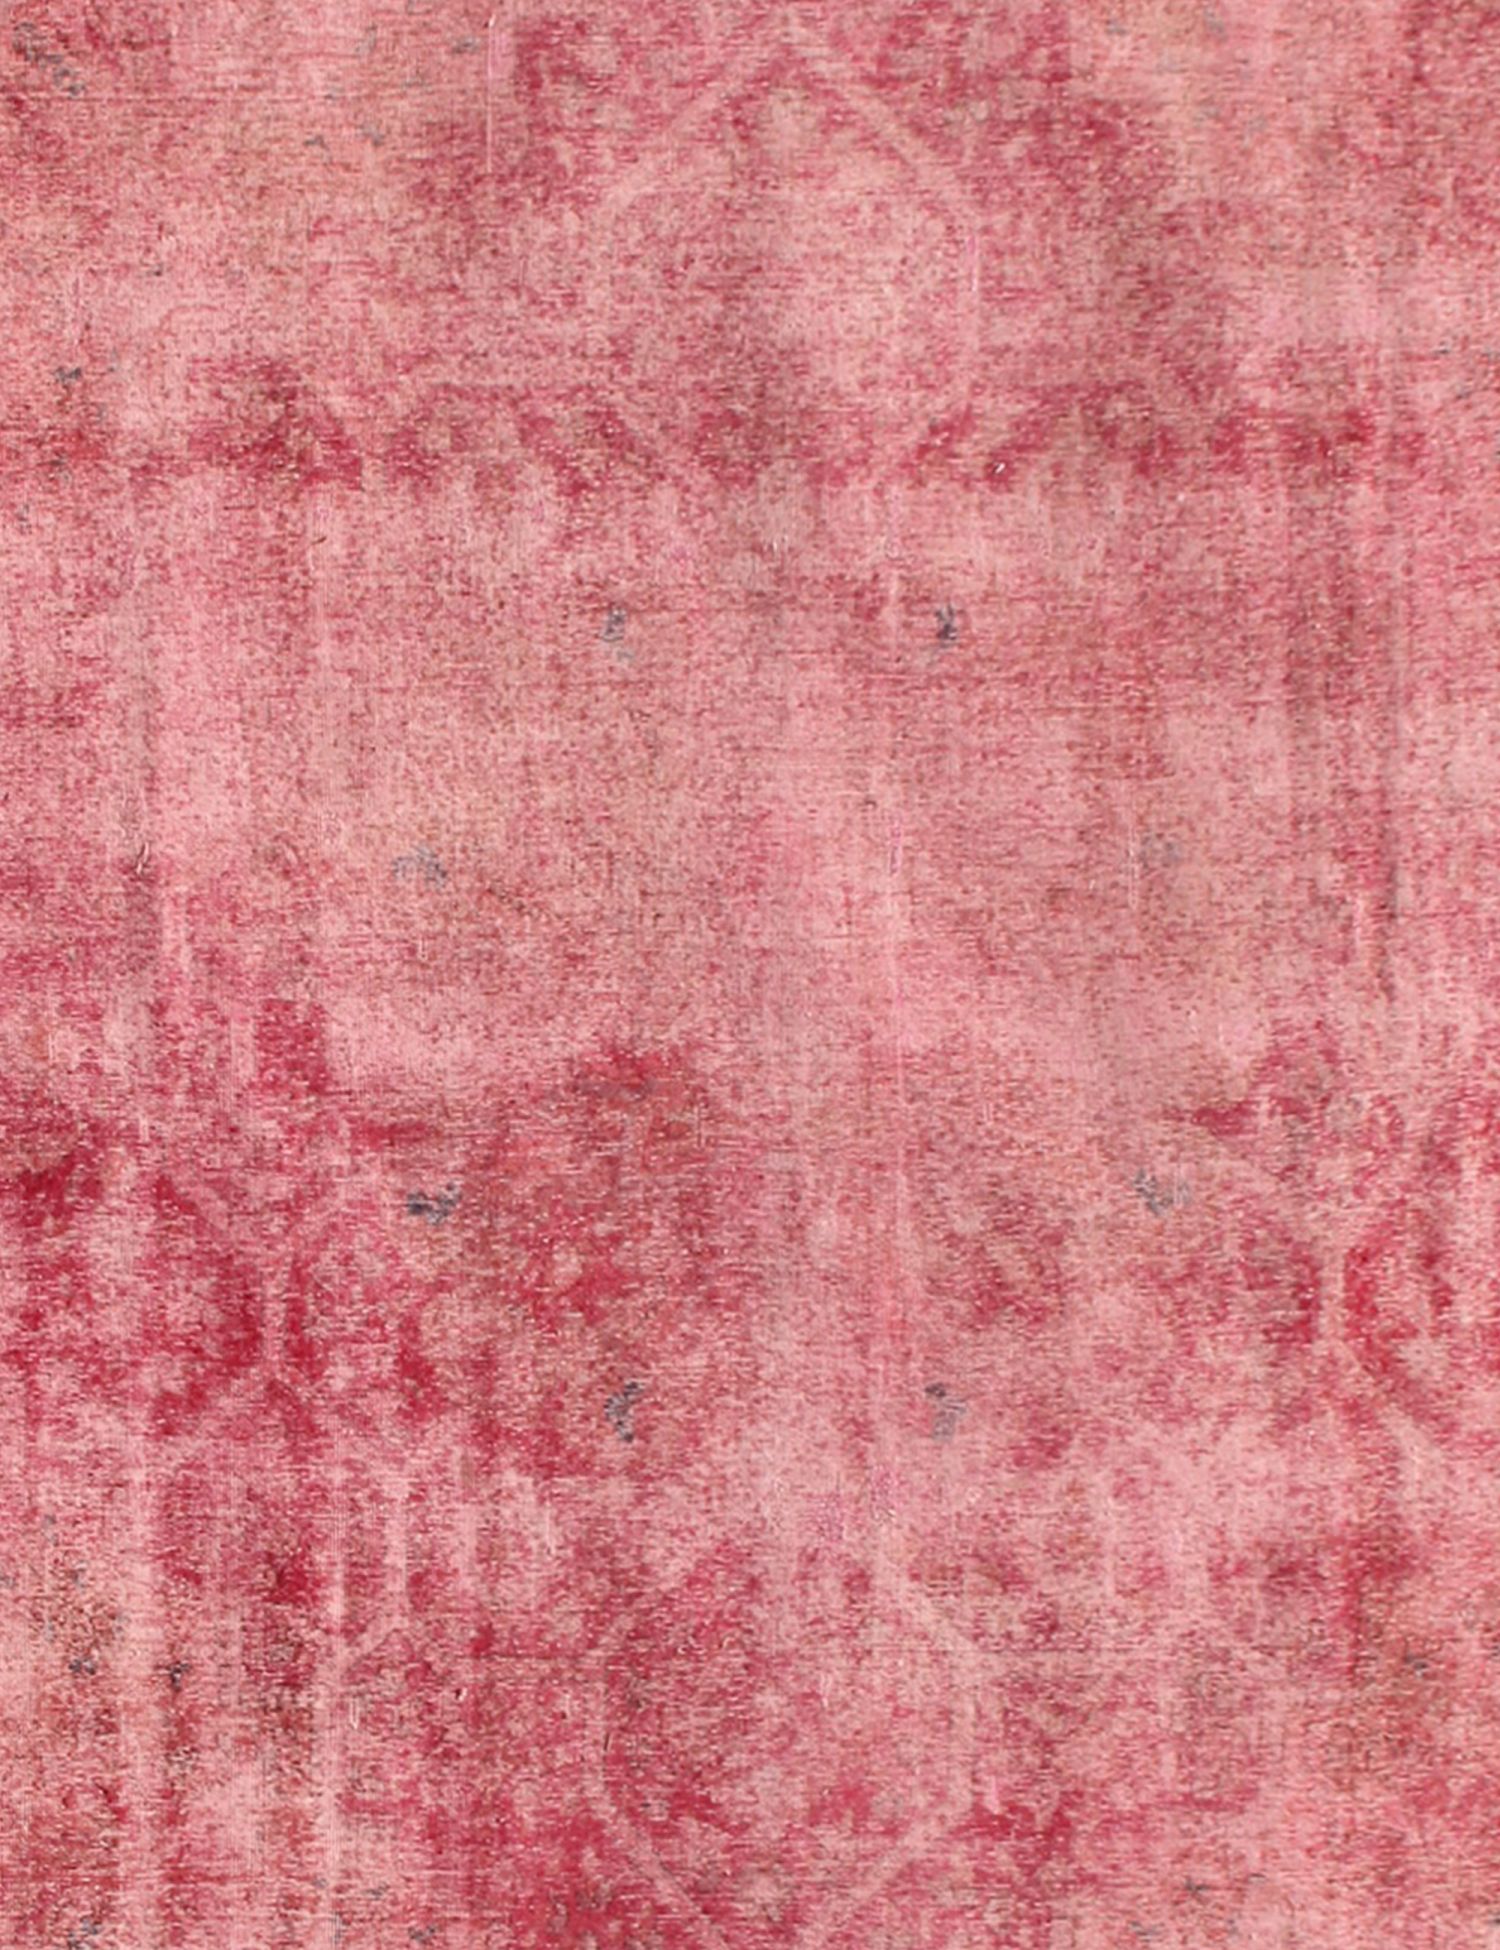 Persisk Vintagetæppe  rød <br/>275 x 255 cm